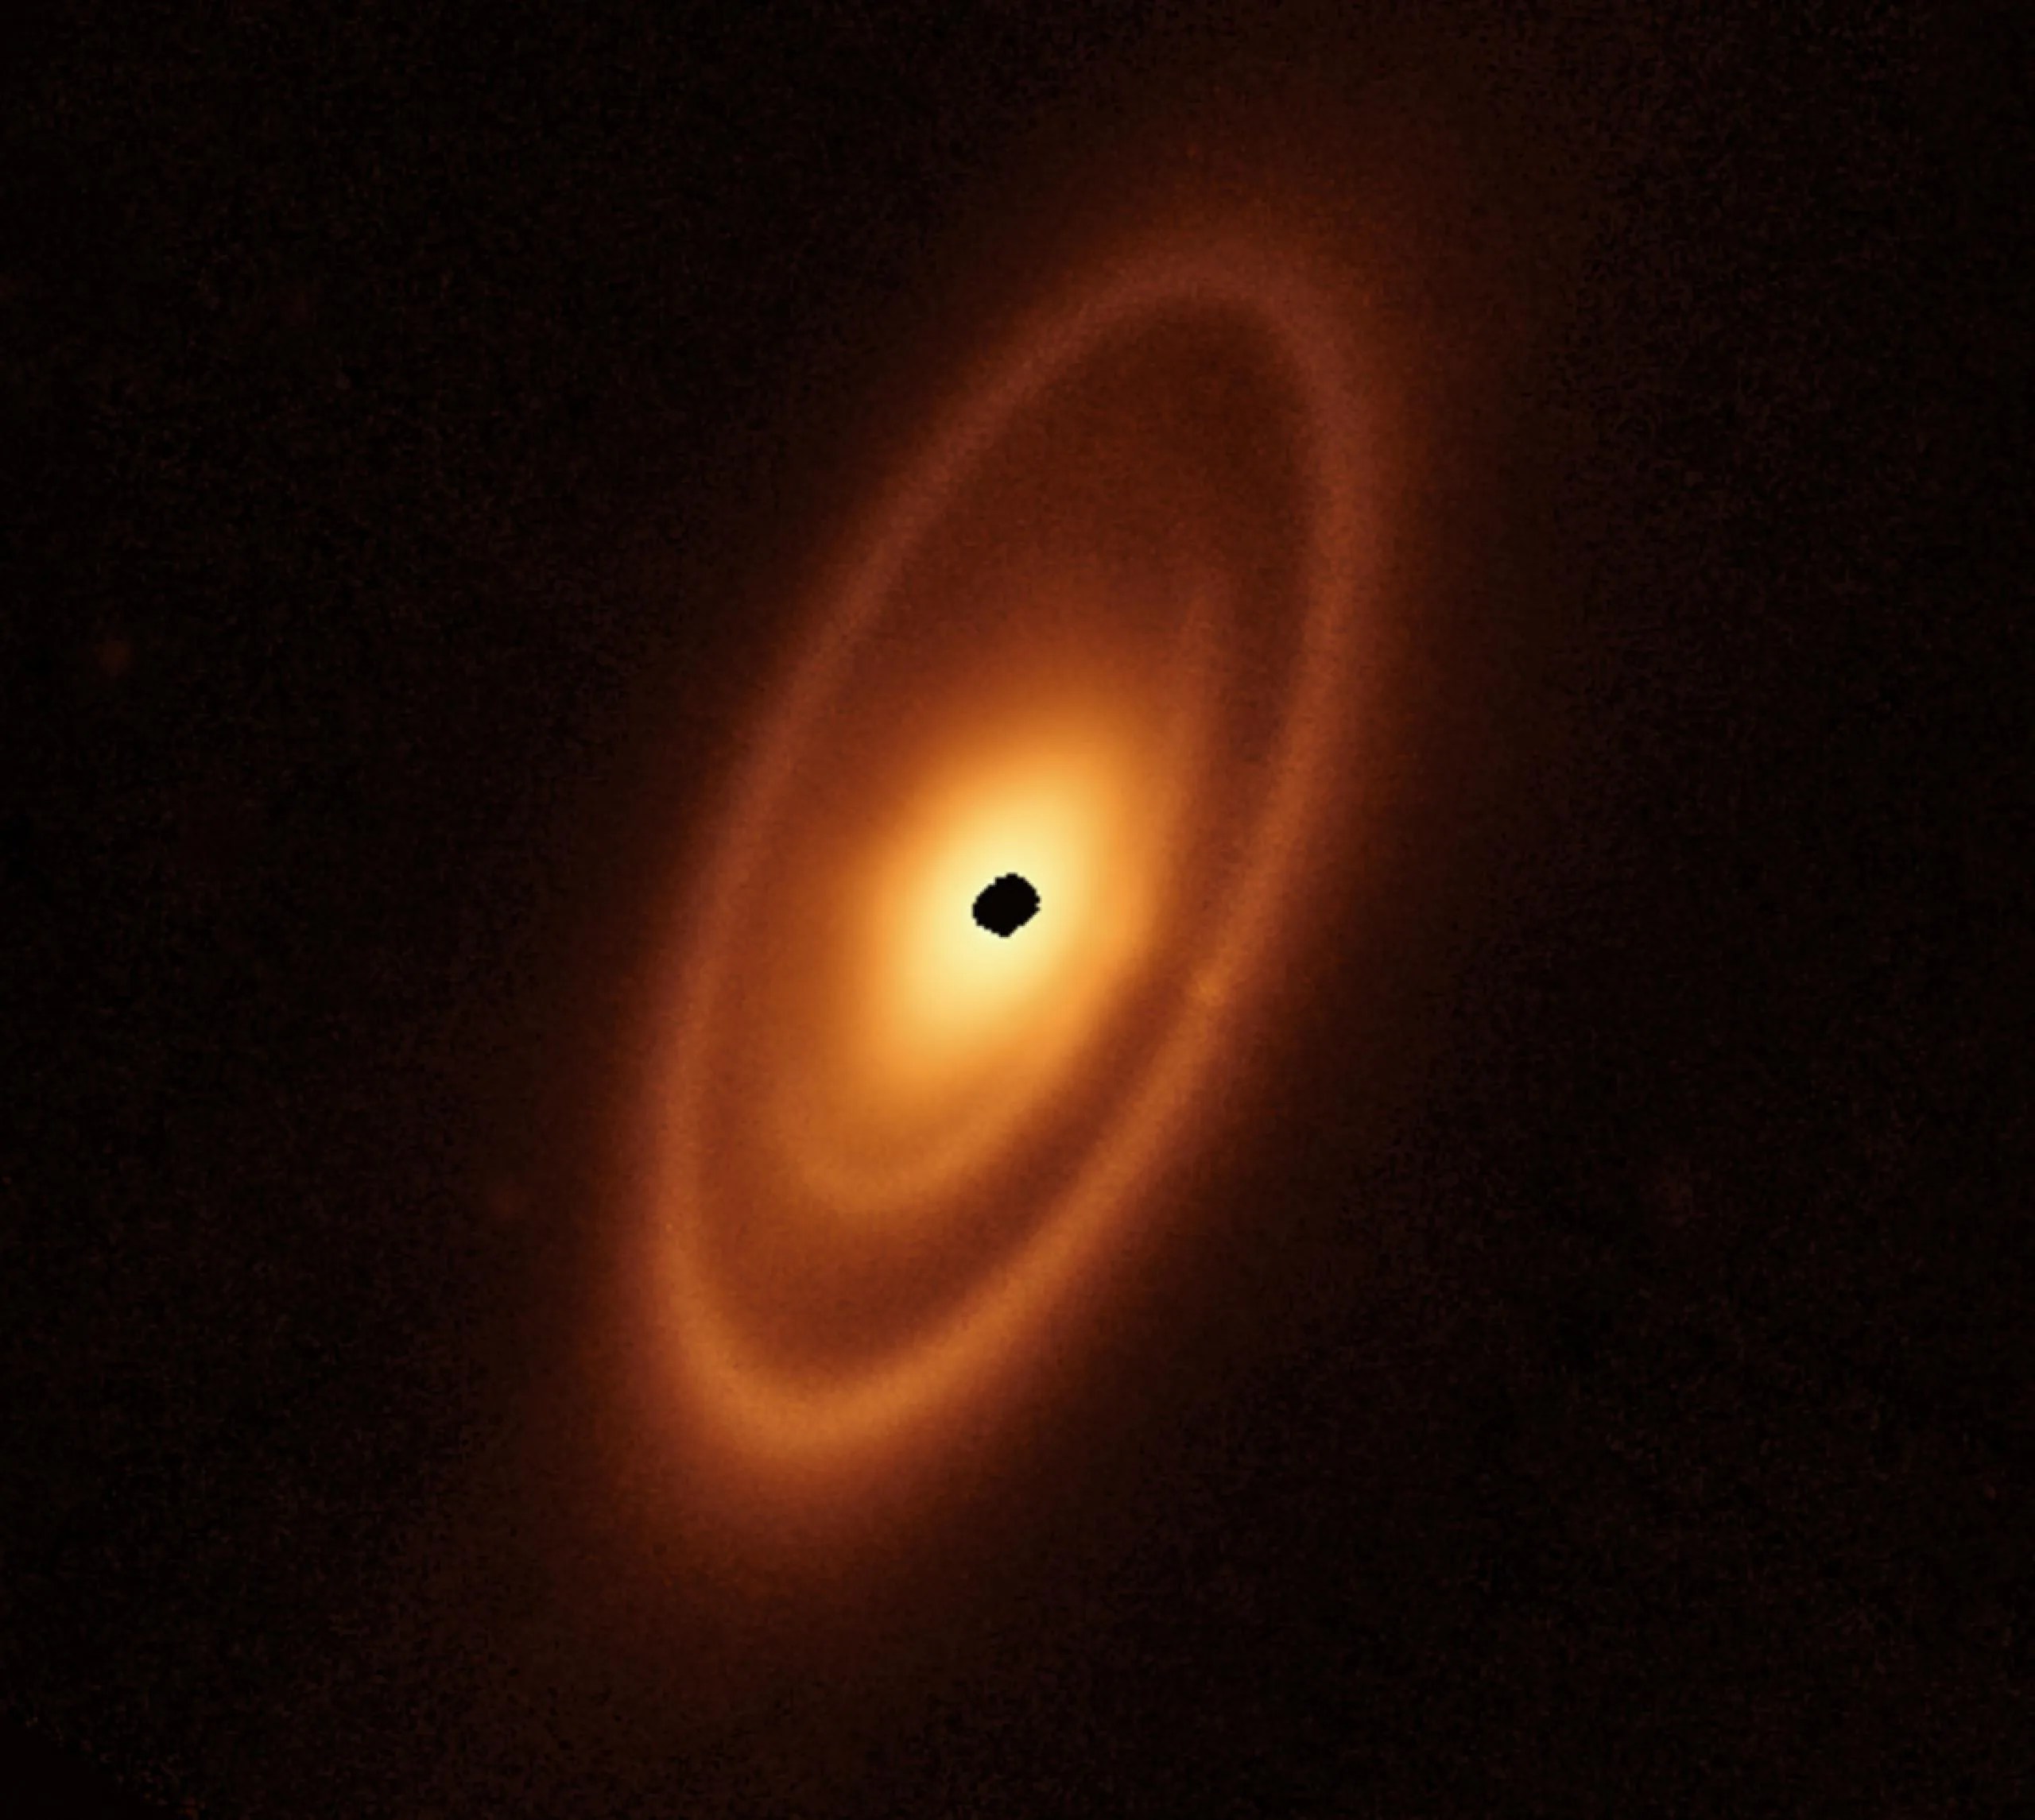 Un óvalo naranja se extiende desde la posición de la 1 en punto hasta la de las 7 horas. Presenta un anillo exterior prominente, un hueco más oscuro, un anillo intermedio, un hueco oscuro más estrecho y un disco interior brillante. En el centro hay una mancha negra irregular que indica la falta de datos.